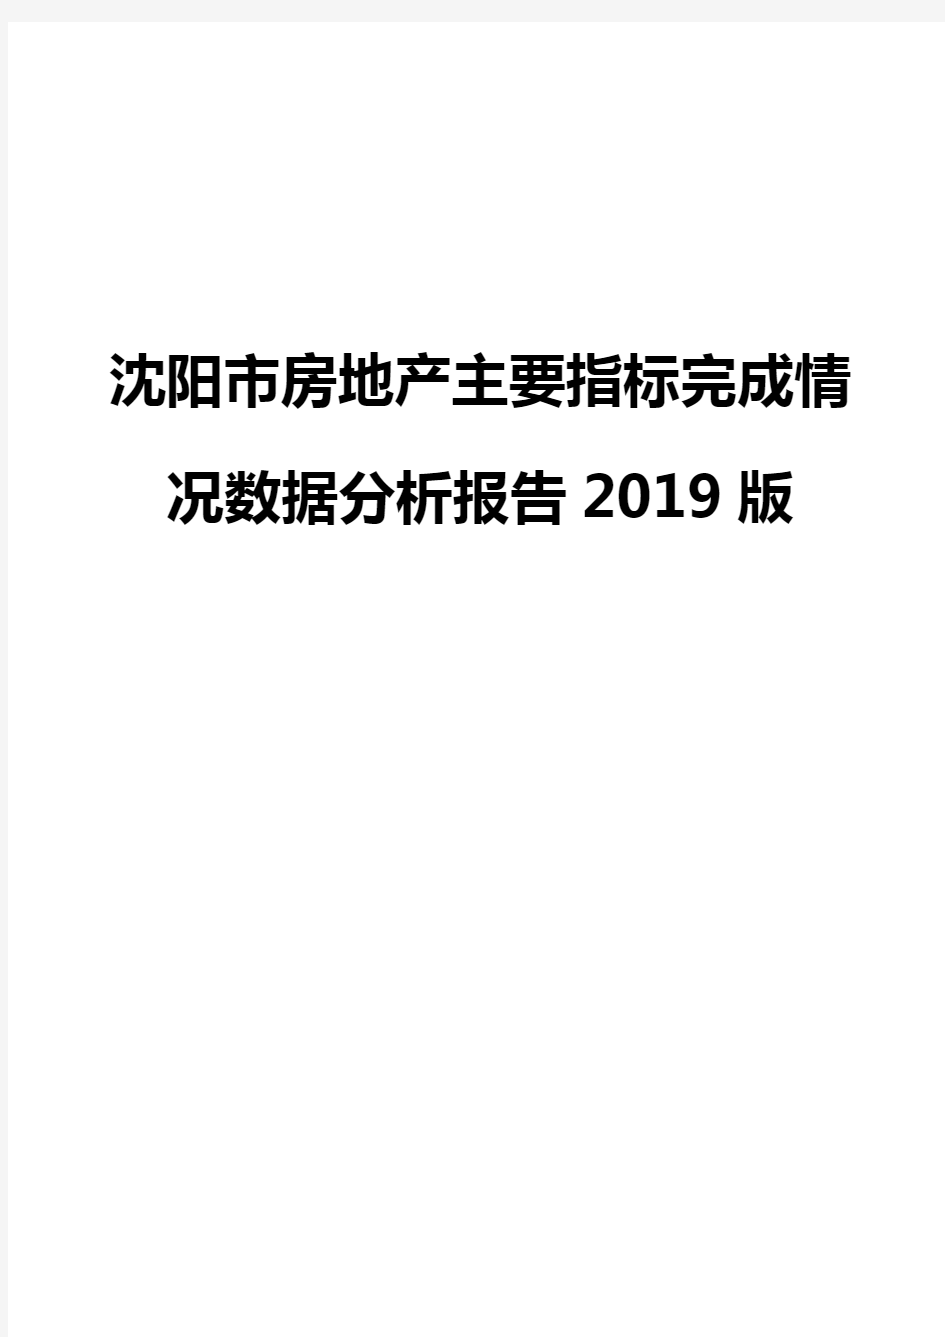 沈阳市房地产主要指标完成情况数据分析报告2019版